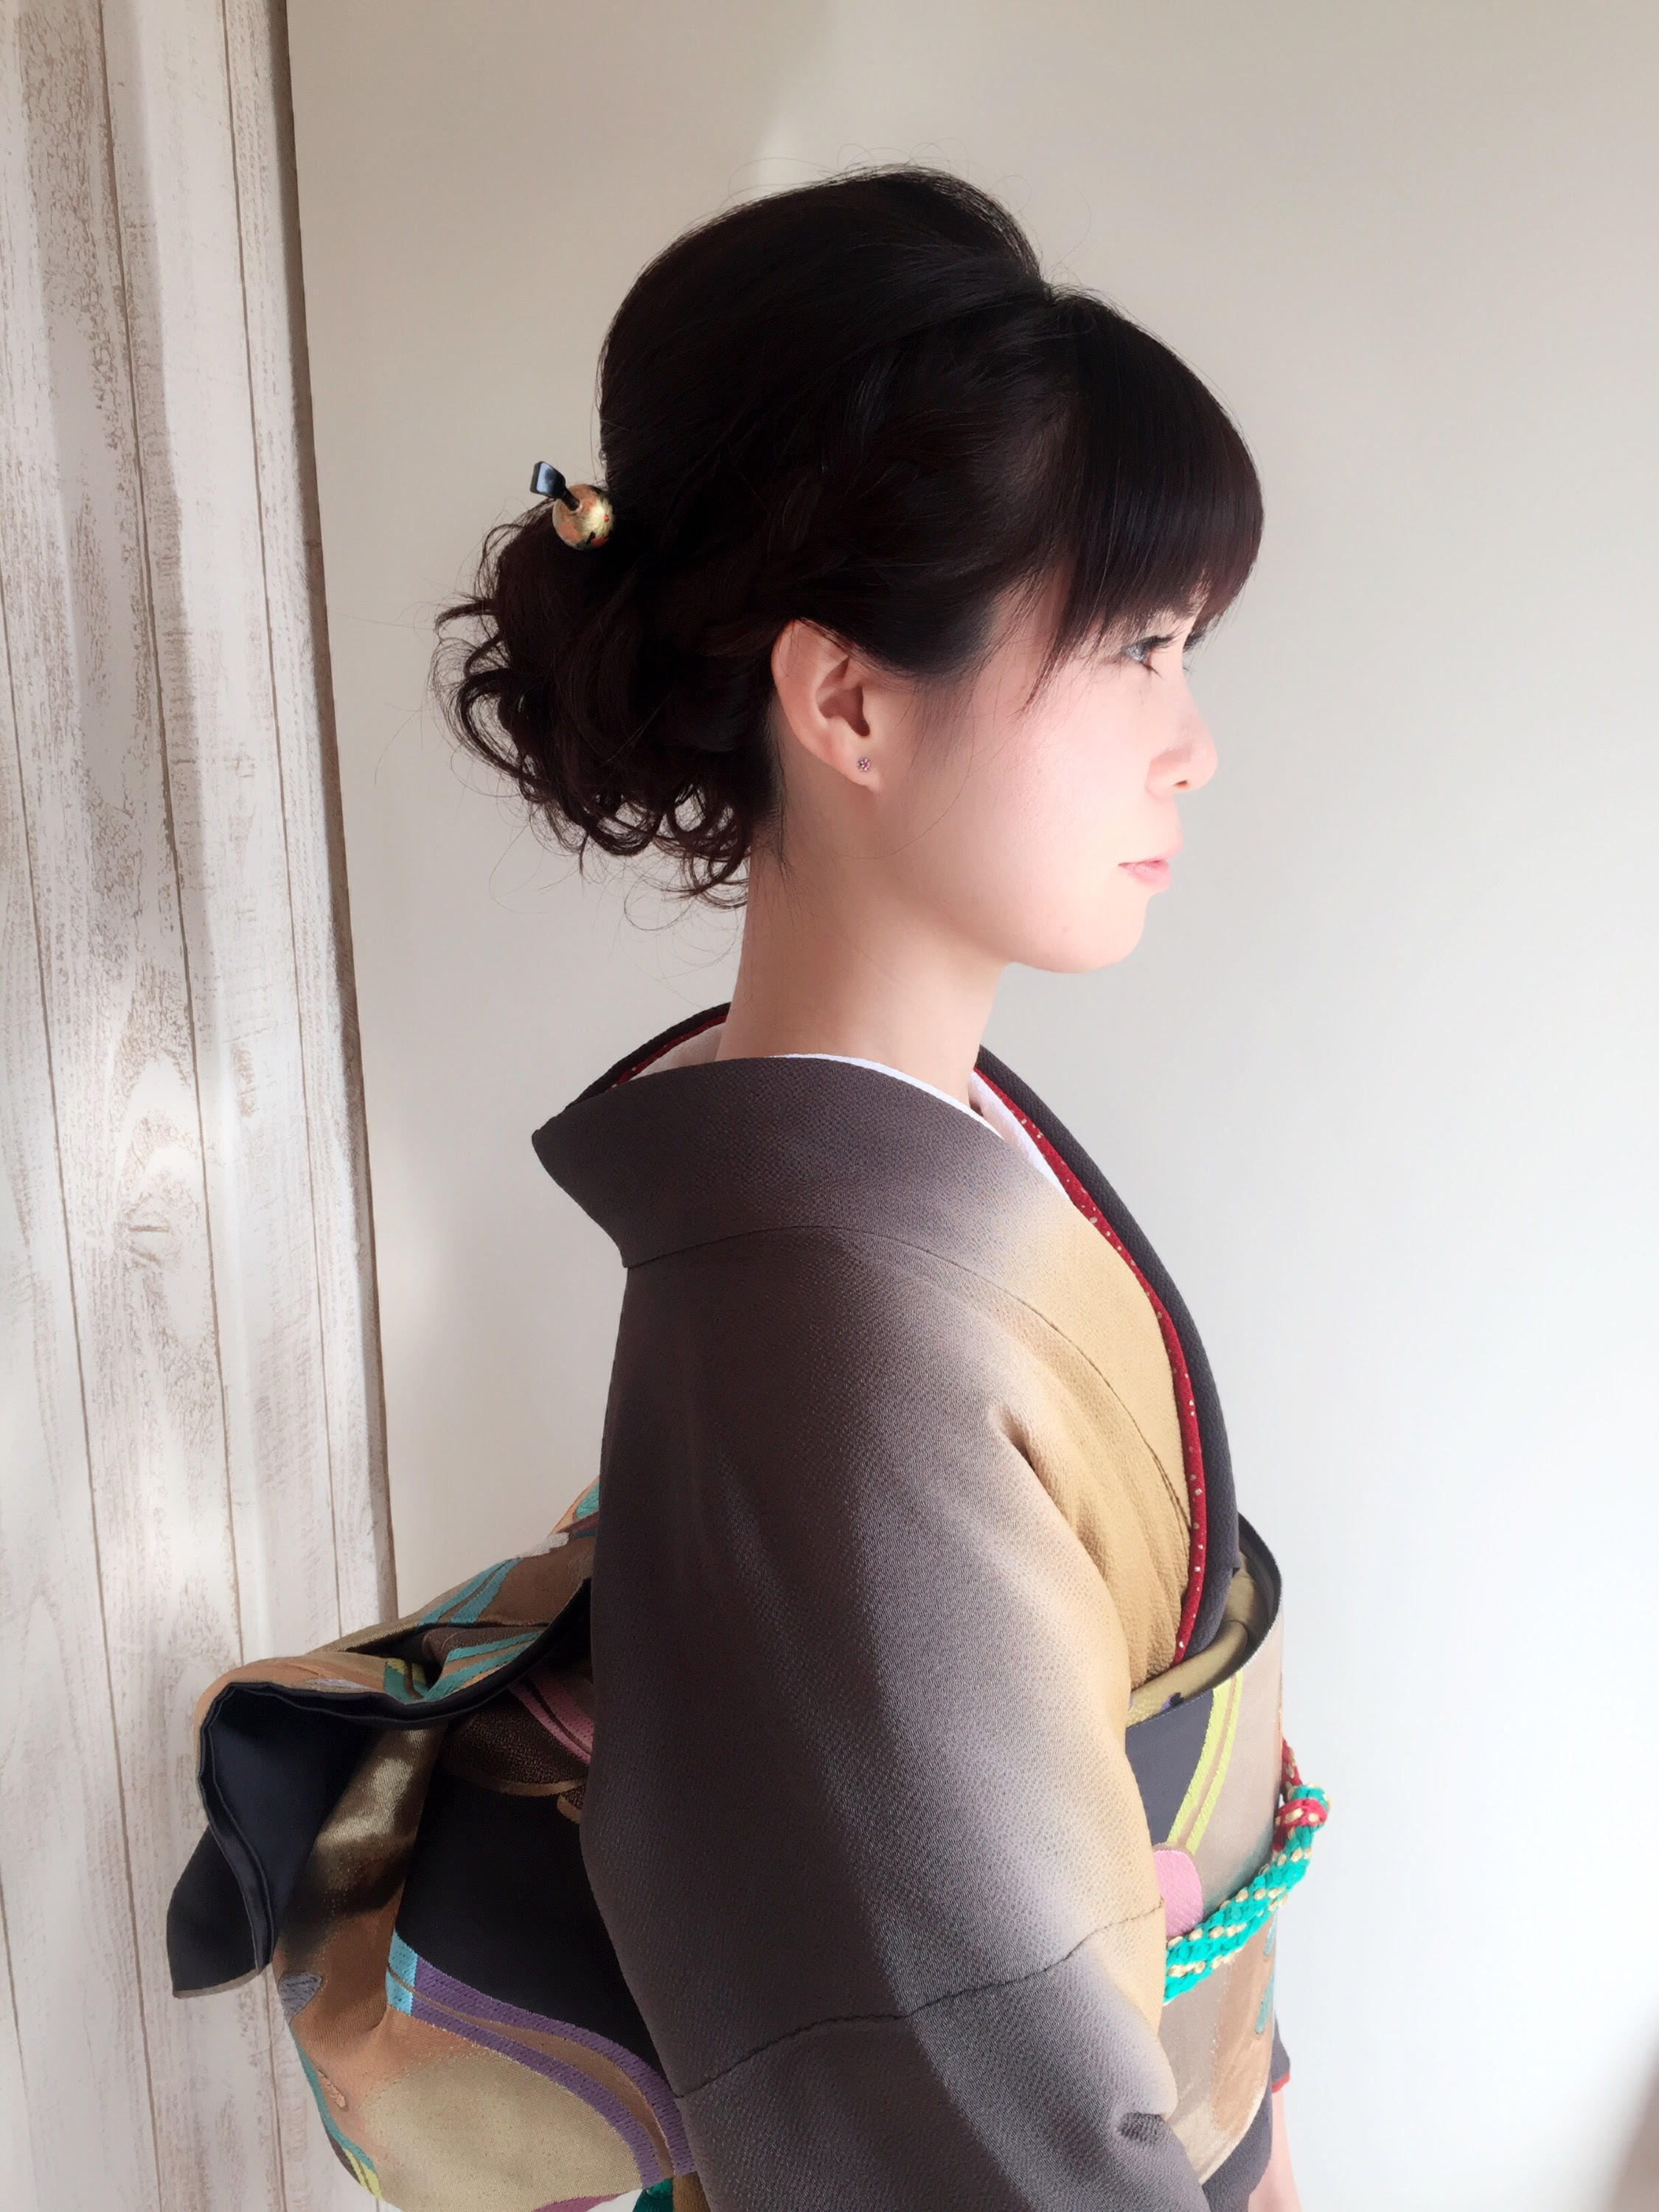 【ダウンロード可能】 40代 着物 ヘア インスピレーションのための髪型画像Arinekamigata